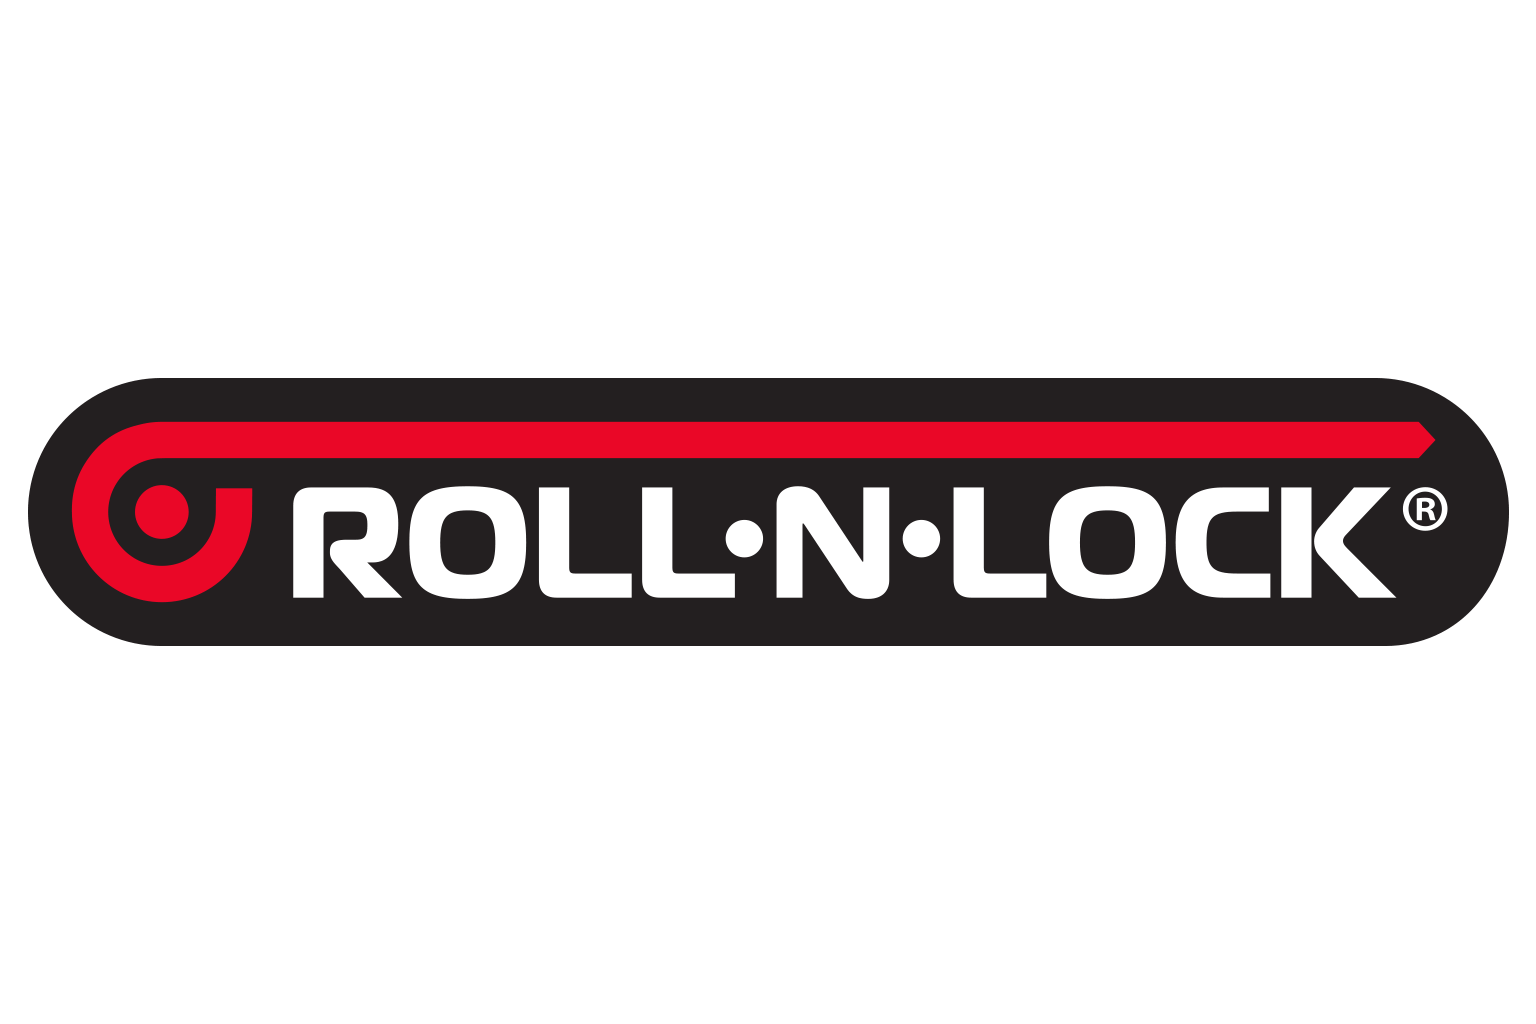 Roll-N-Lock